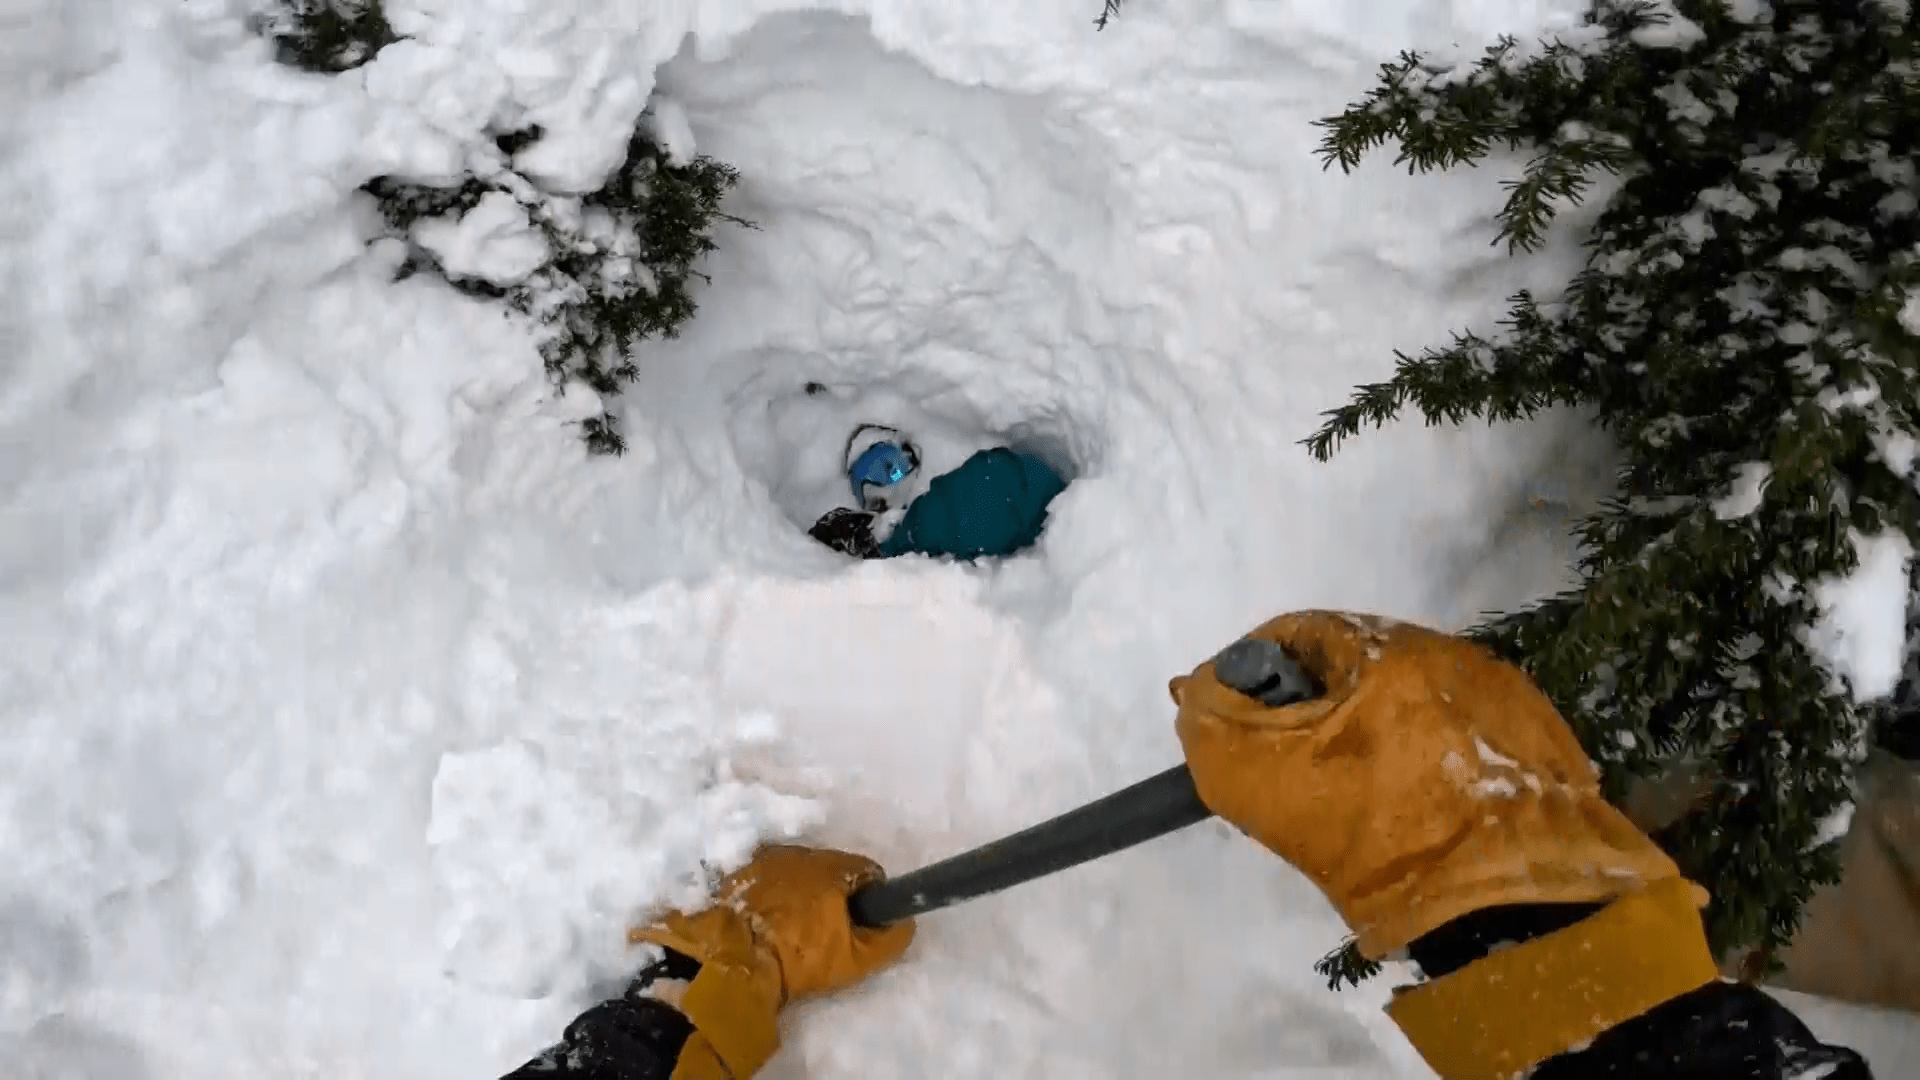 Po několika minutách se mu podařilo odhrabat sníh natolik, aby viděl hlavu zavaleného snowboardisty. 